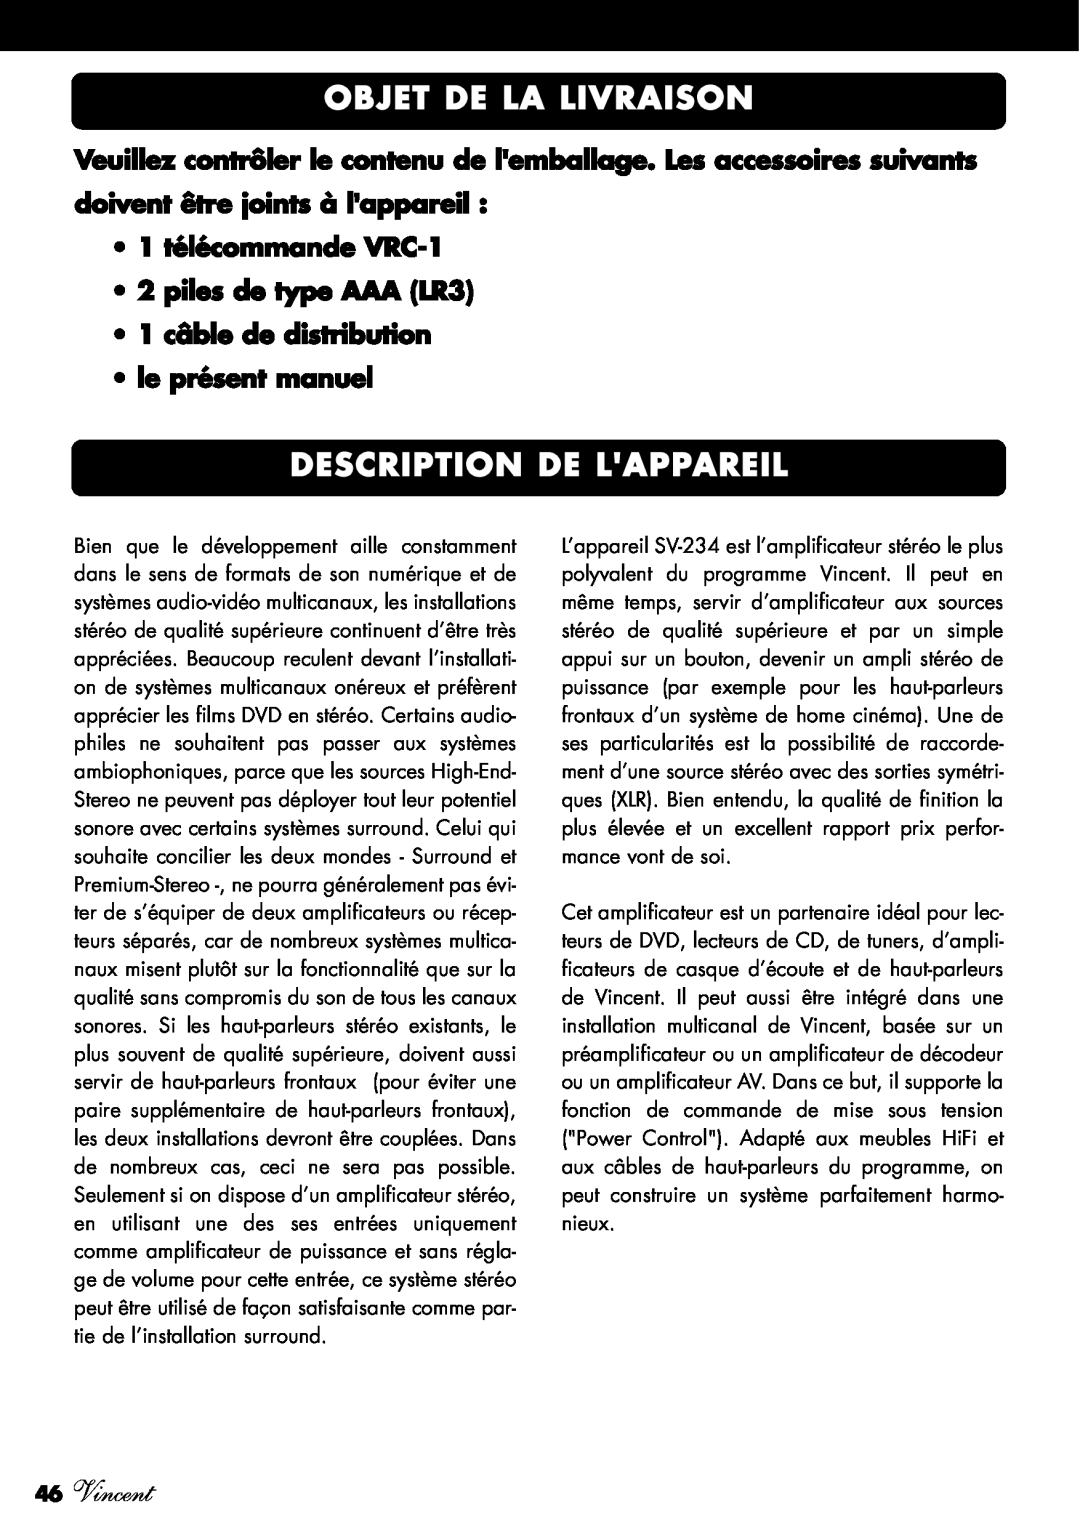 Vincent Audio SV-234 Objet De La Livraison, Description De Lappareil, 46Vincent, 1 câble de distribution le présent manuel 